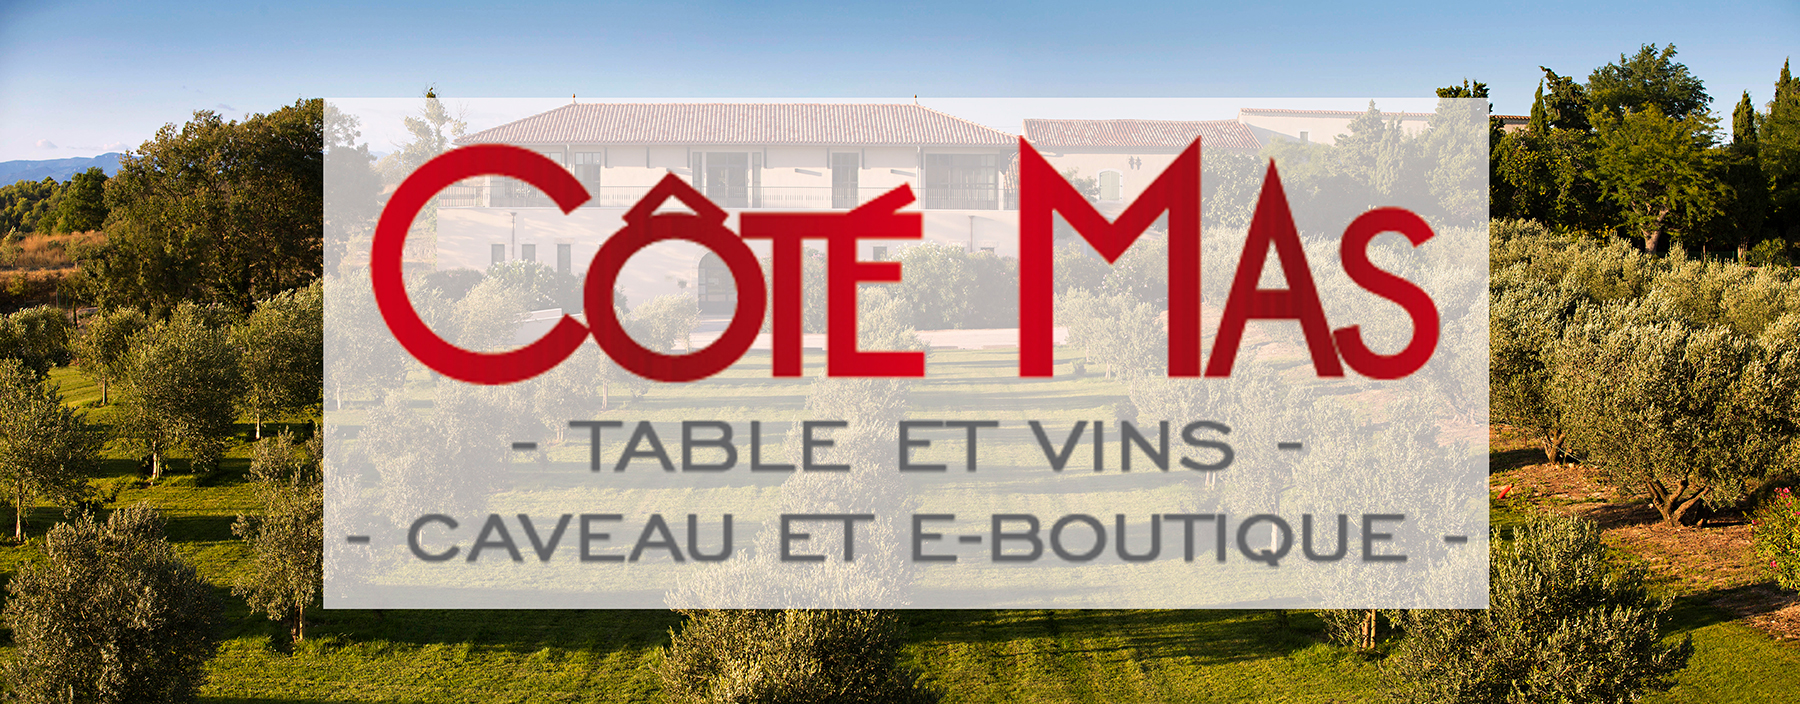 Côté Mas Restaurant Caveau E boutique